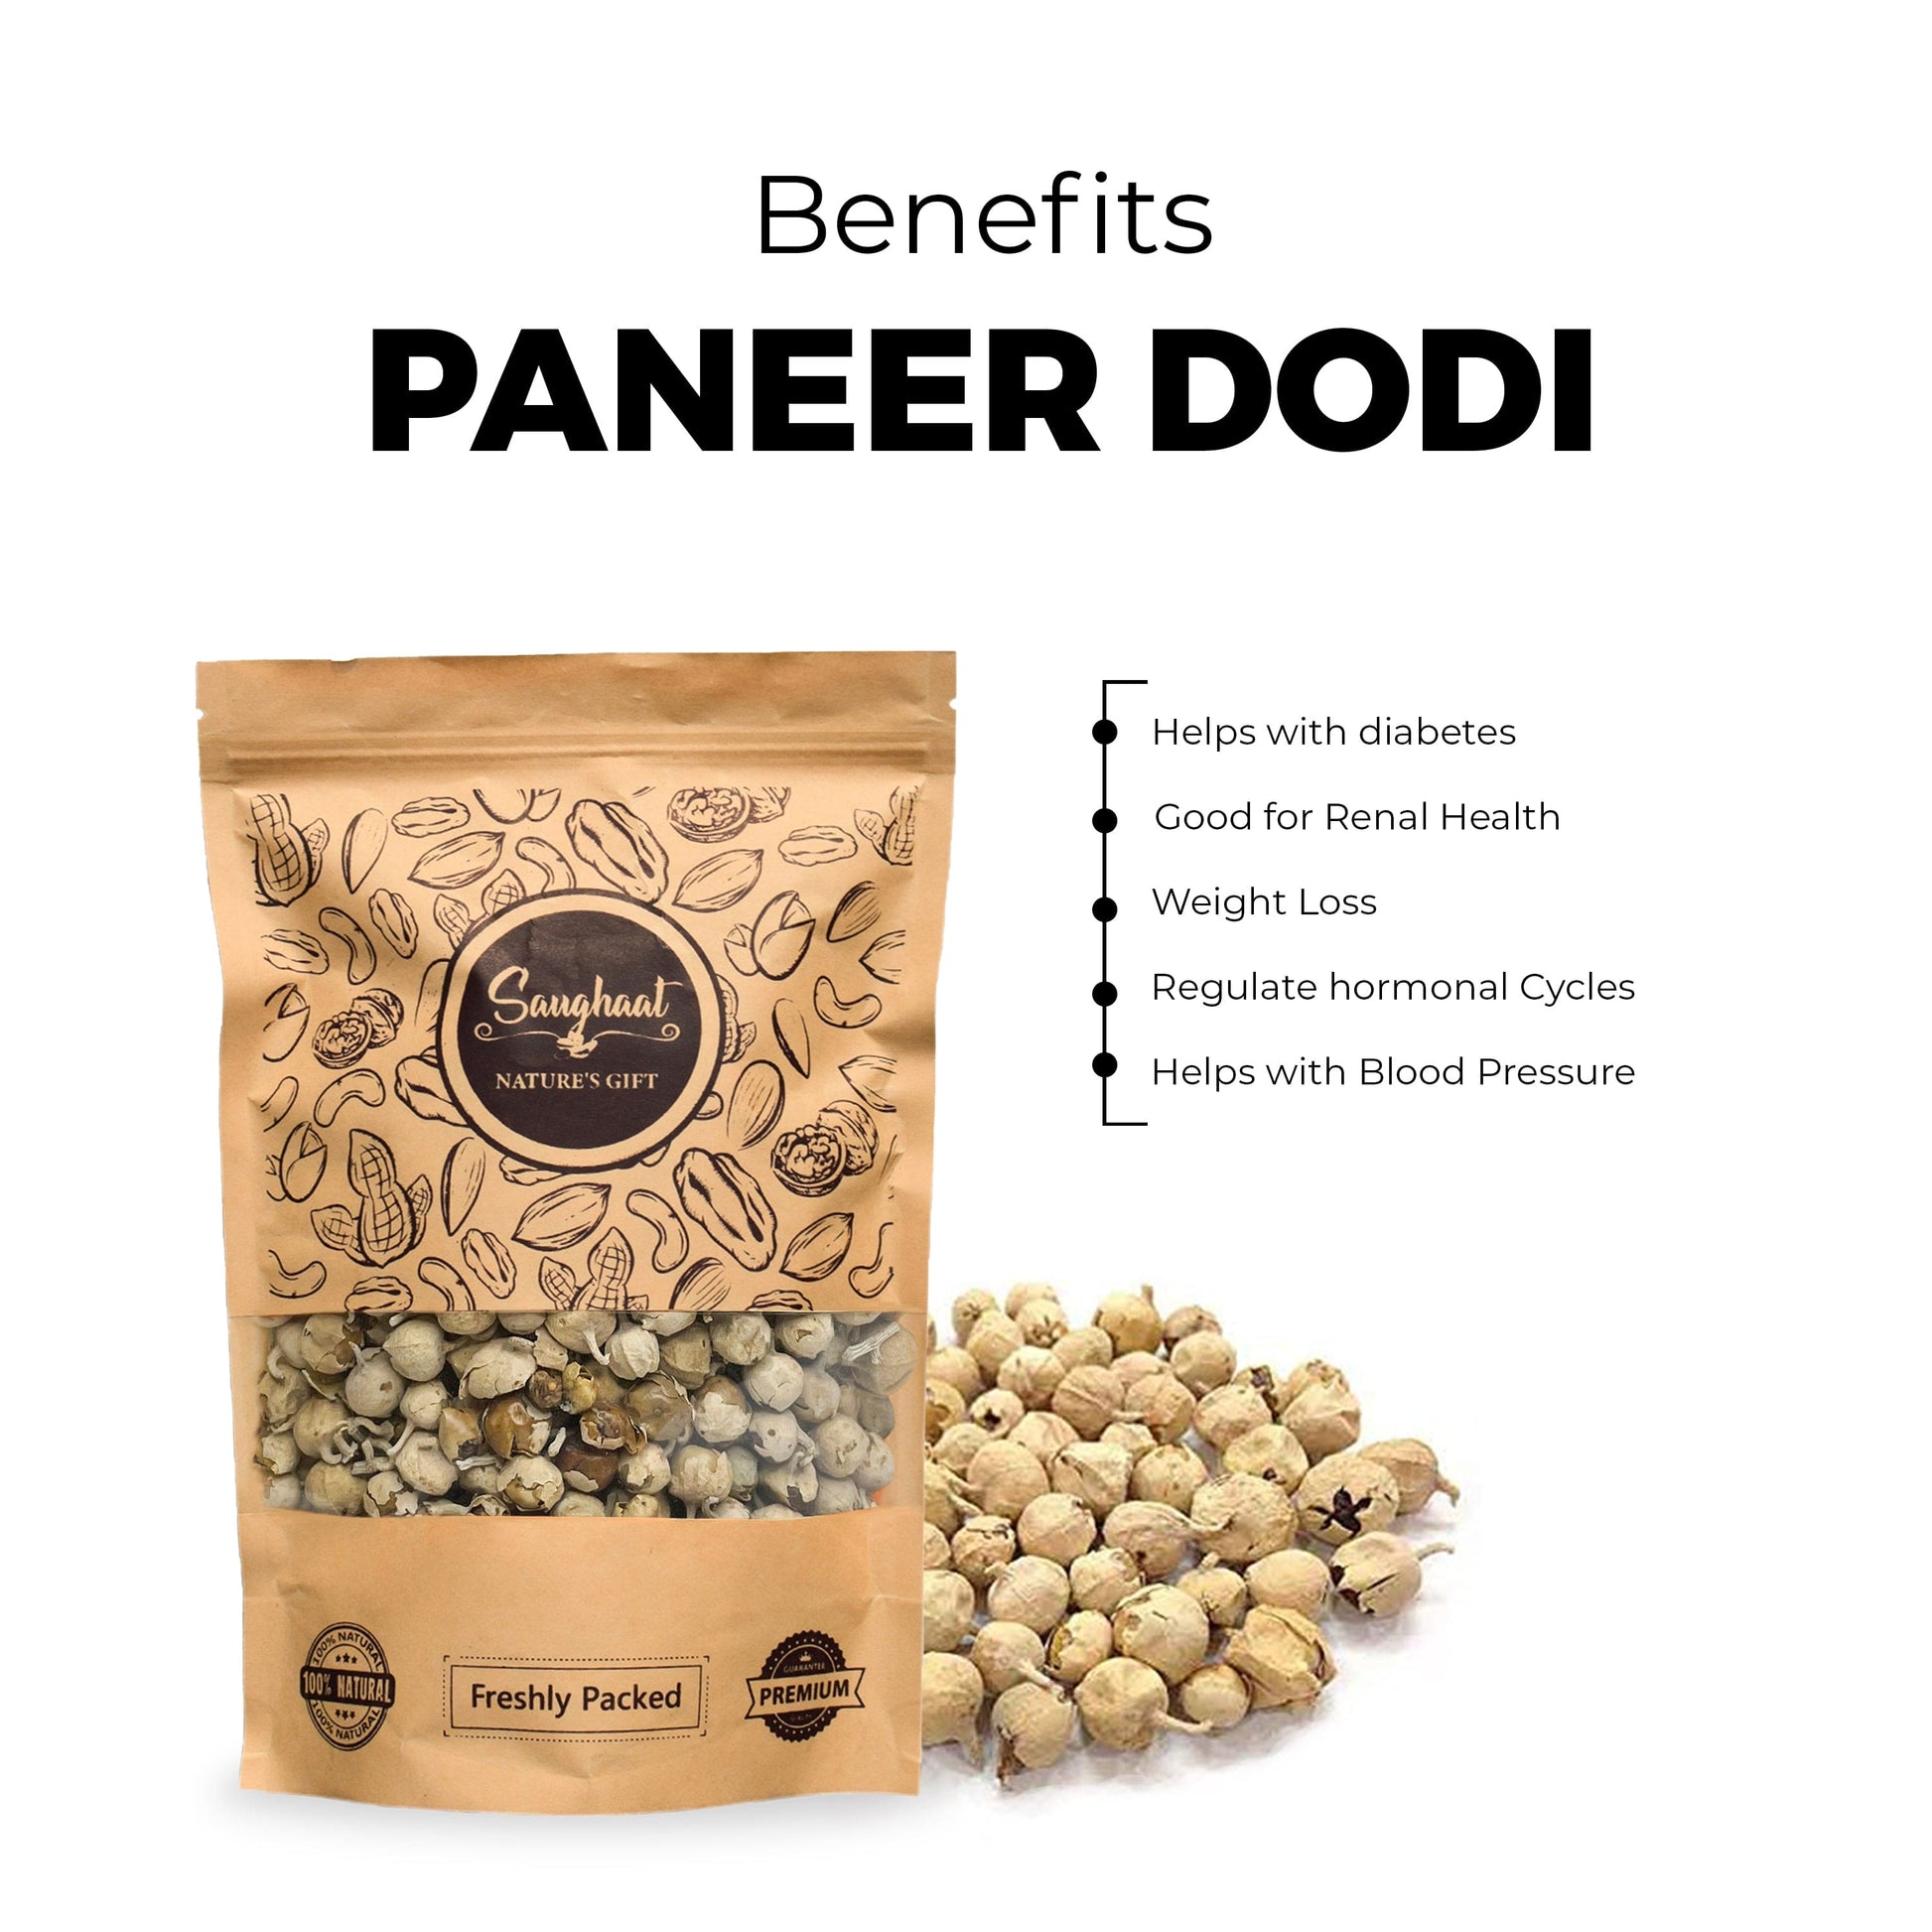 Benefits of Paneer Dodi